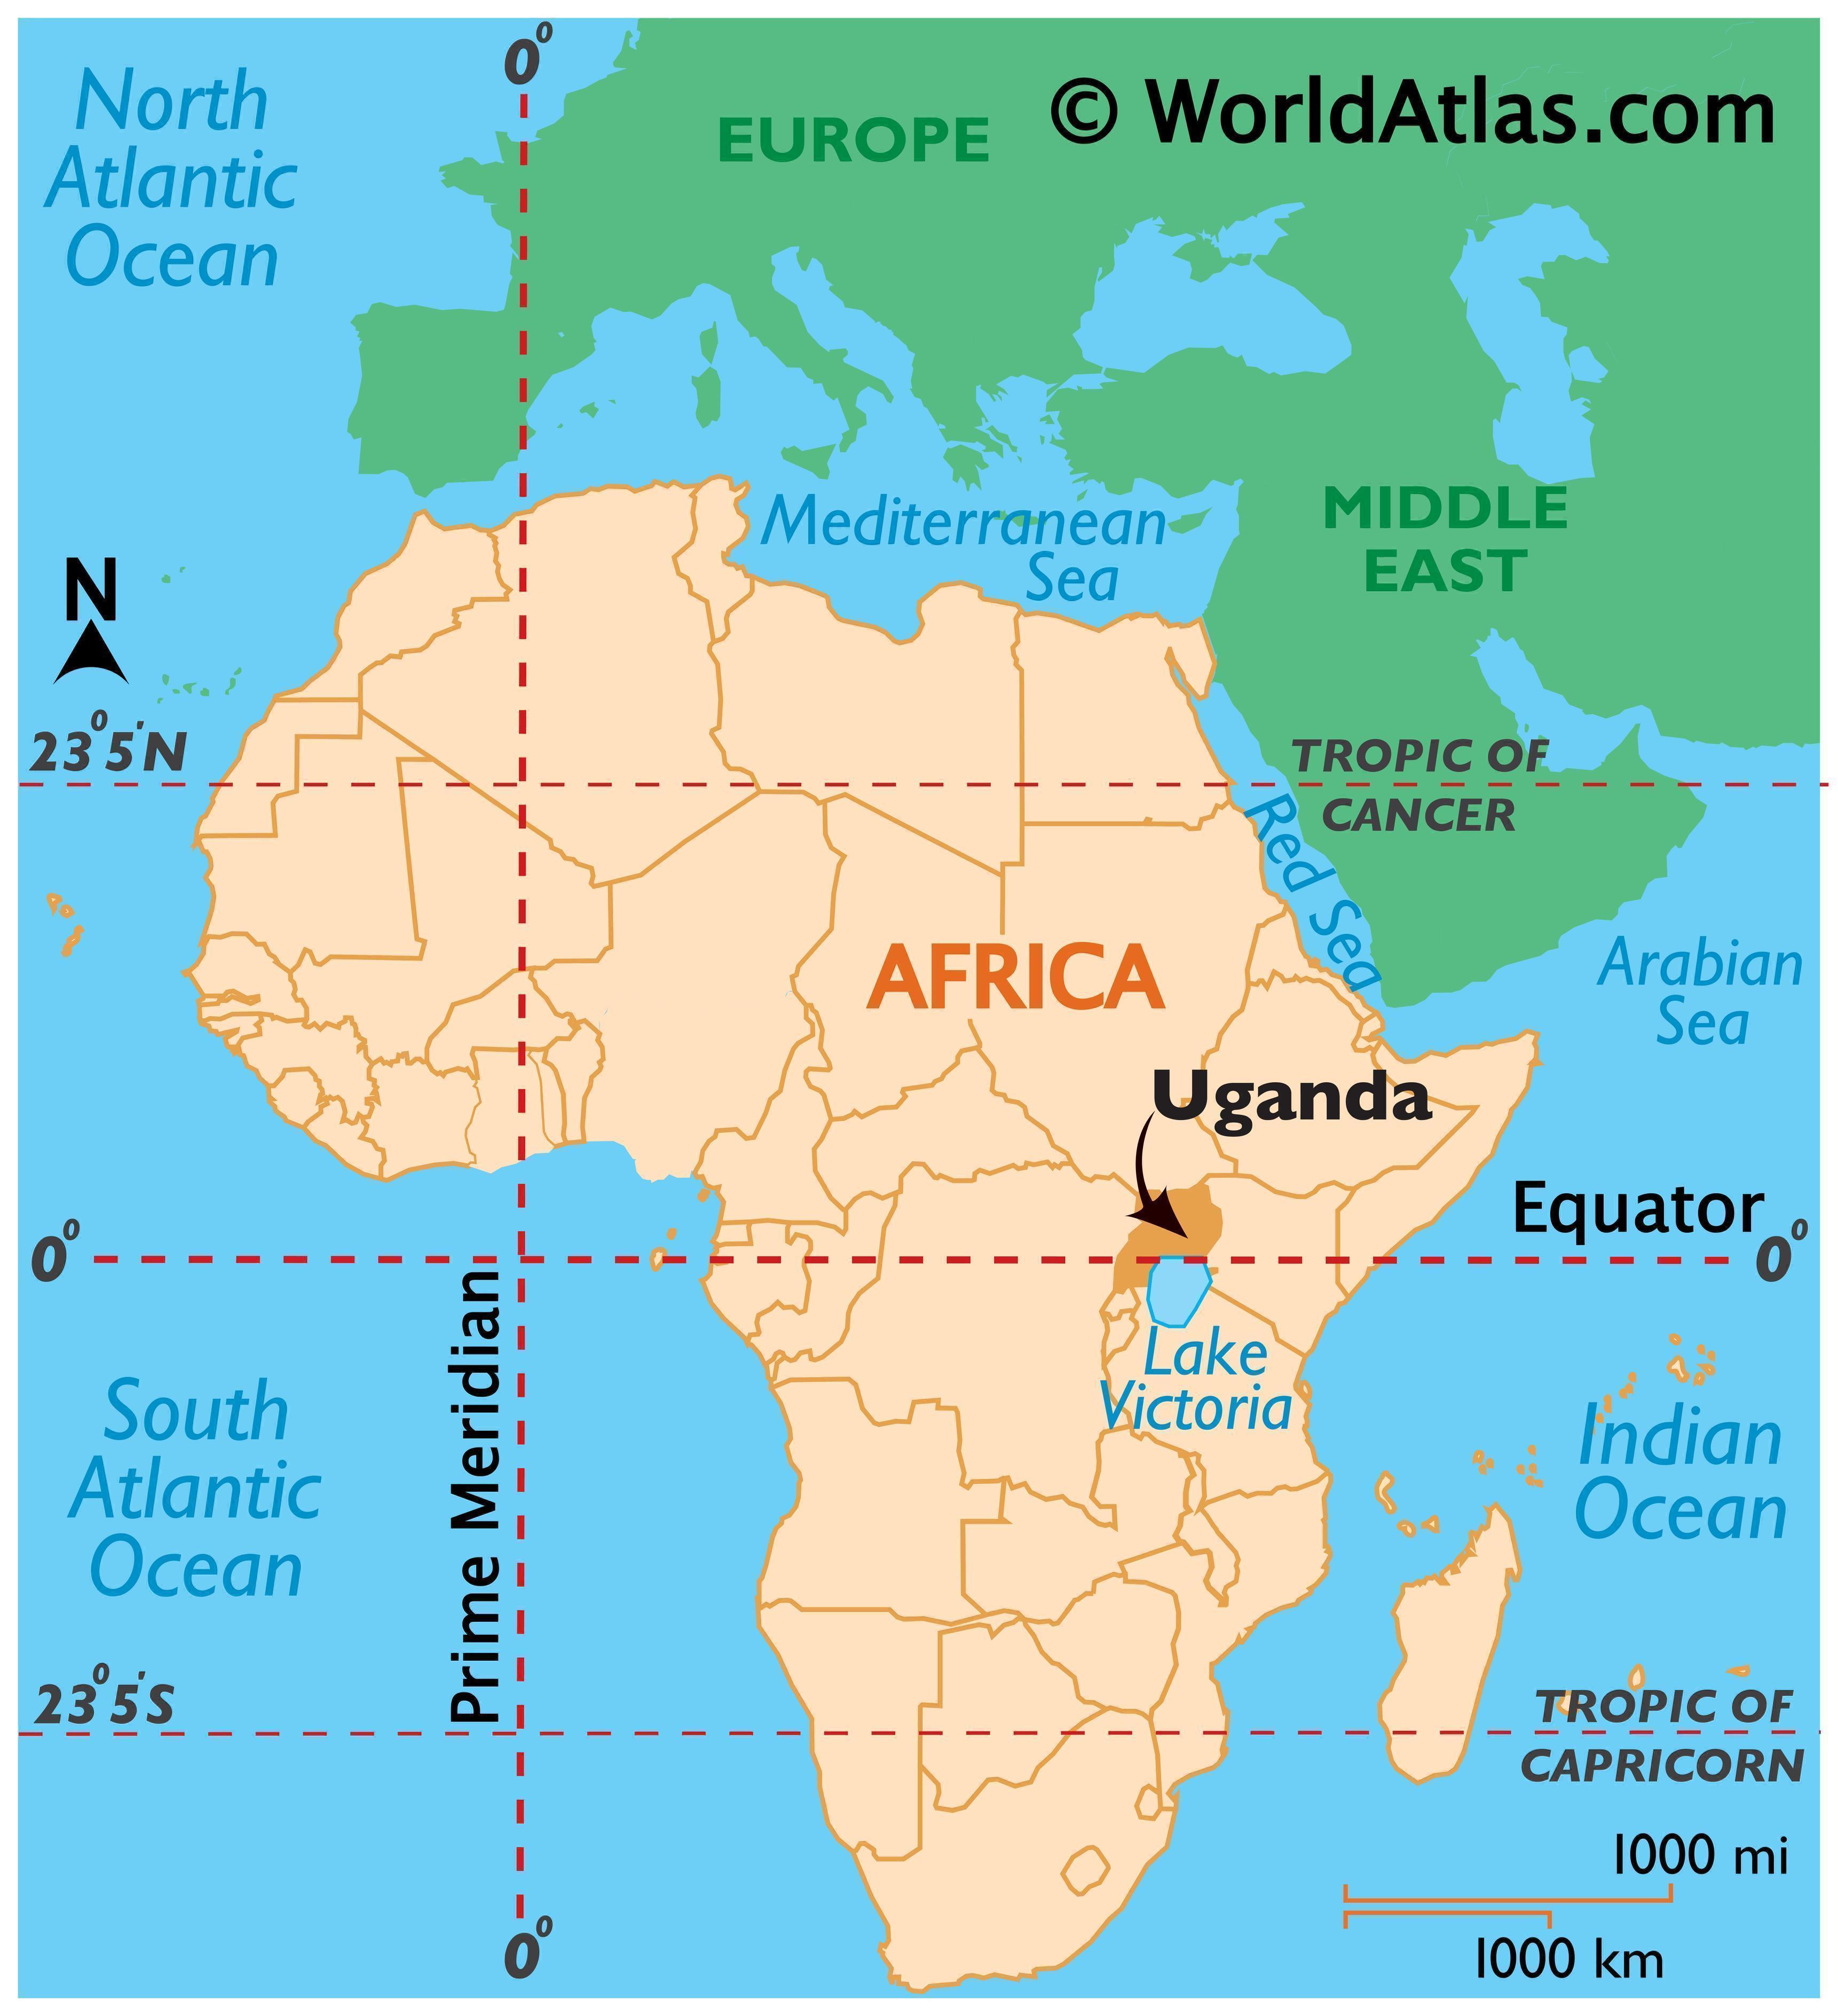 uganda on a world map Uganda Map Geography Of Uganda Map Of Uganda Worldatlas Com uganda on a world map